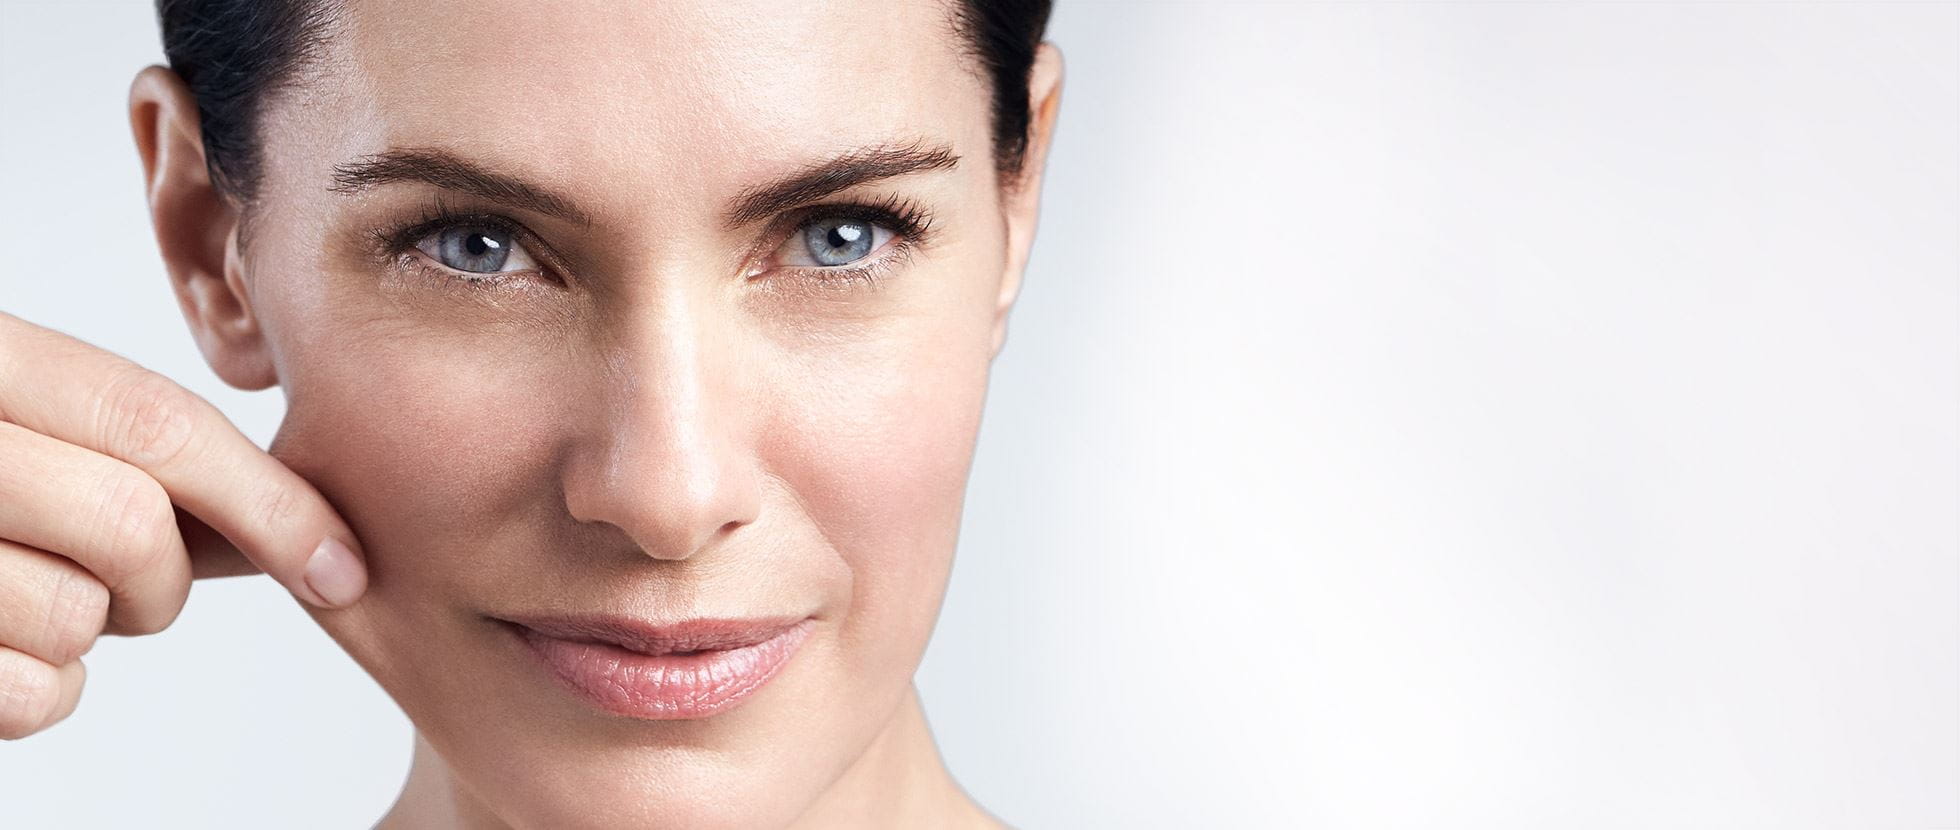 سرم صورت روغنی پرکننده و تقویت الاستیسیته اوسرین | مغذی، افزایش انعطاف پذیری و کشسانی پوست